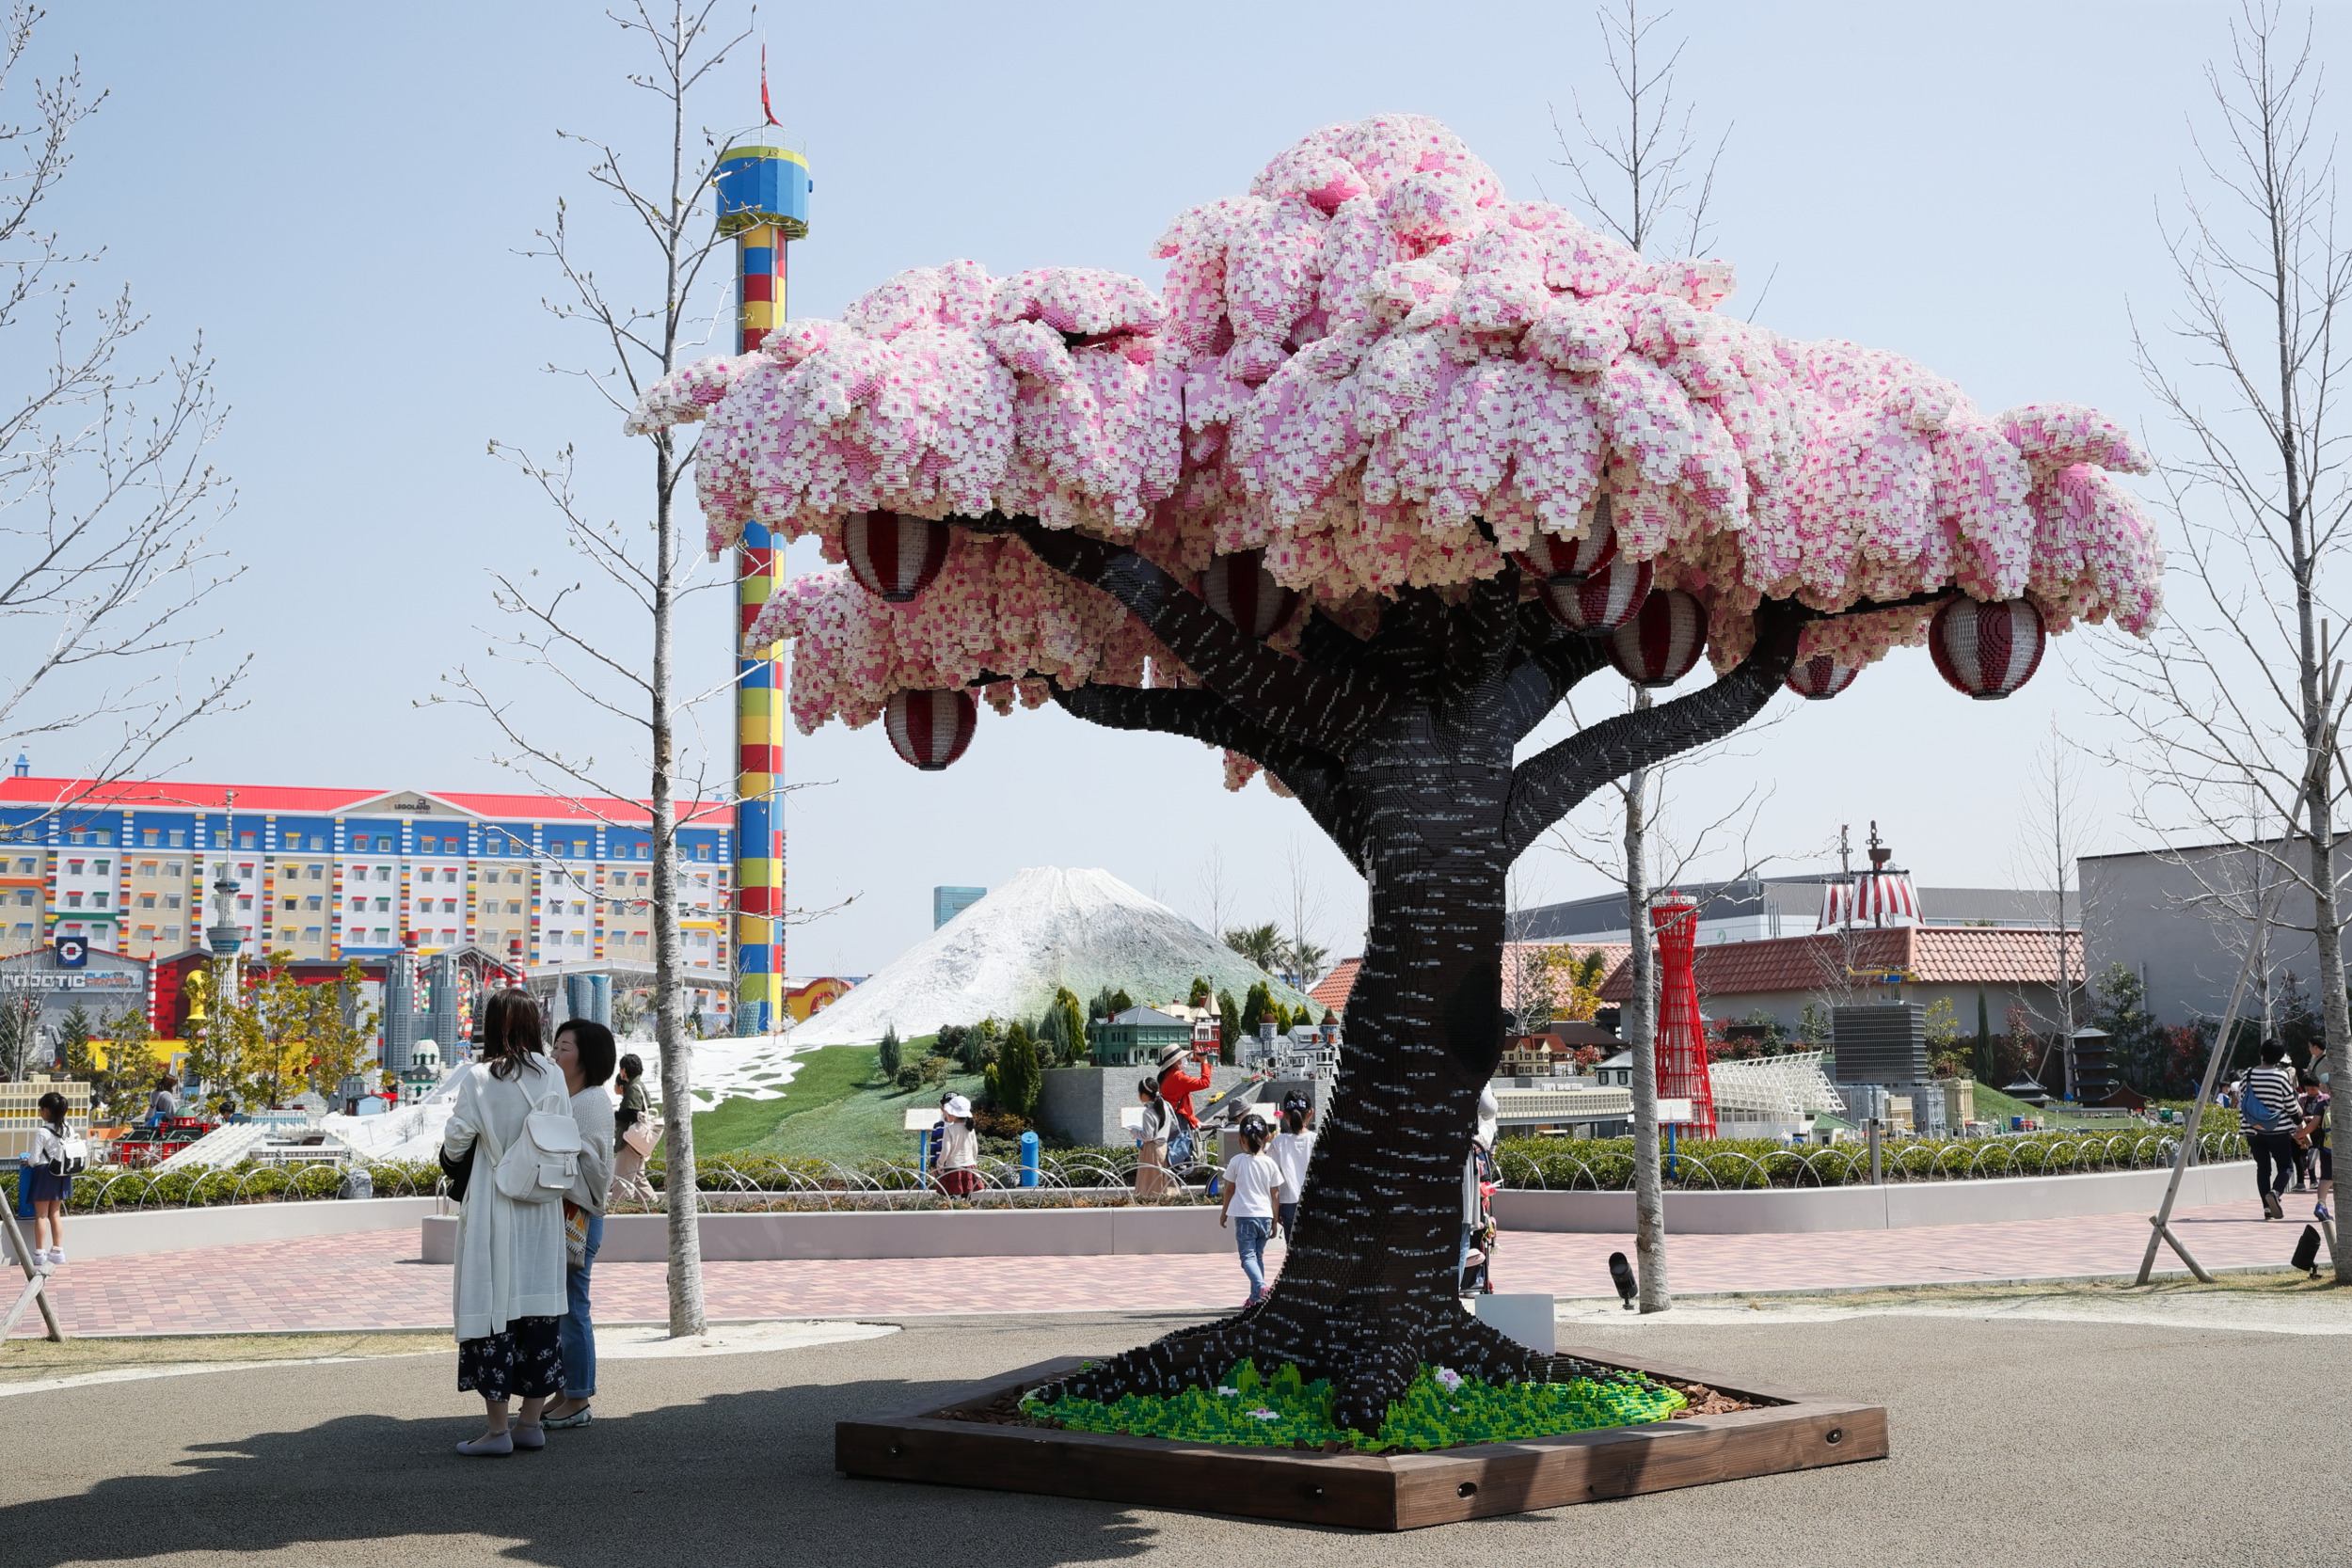 LEGOLAND Japan breaks world record with 800,000 brick sakura tree